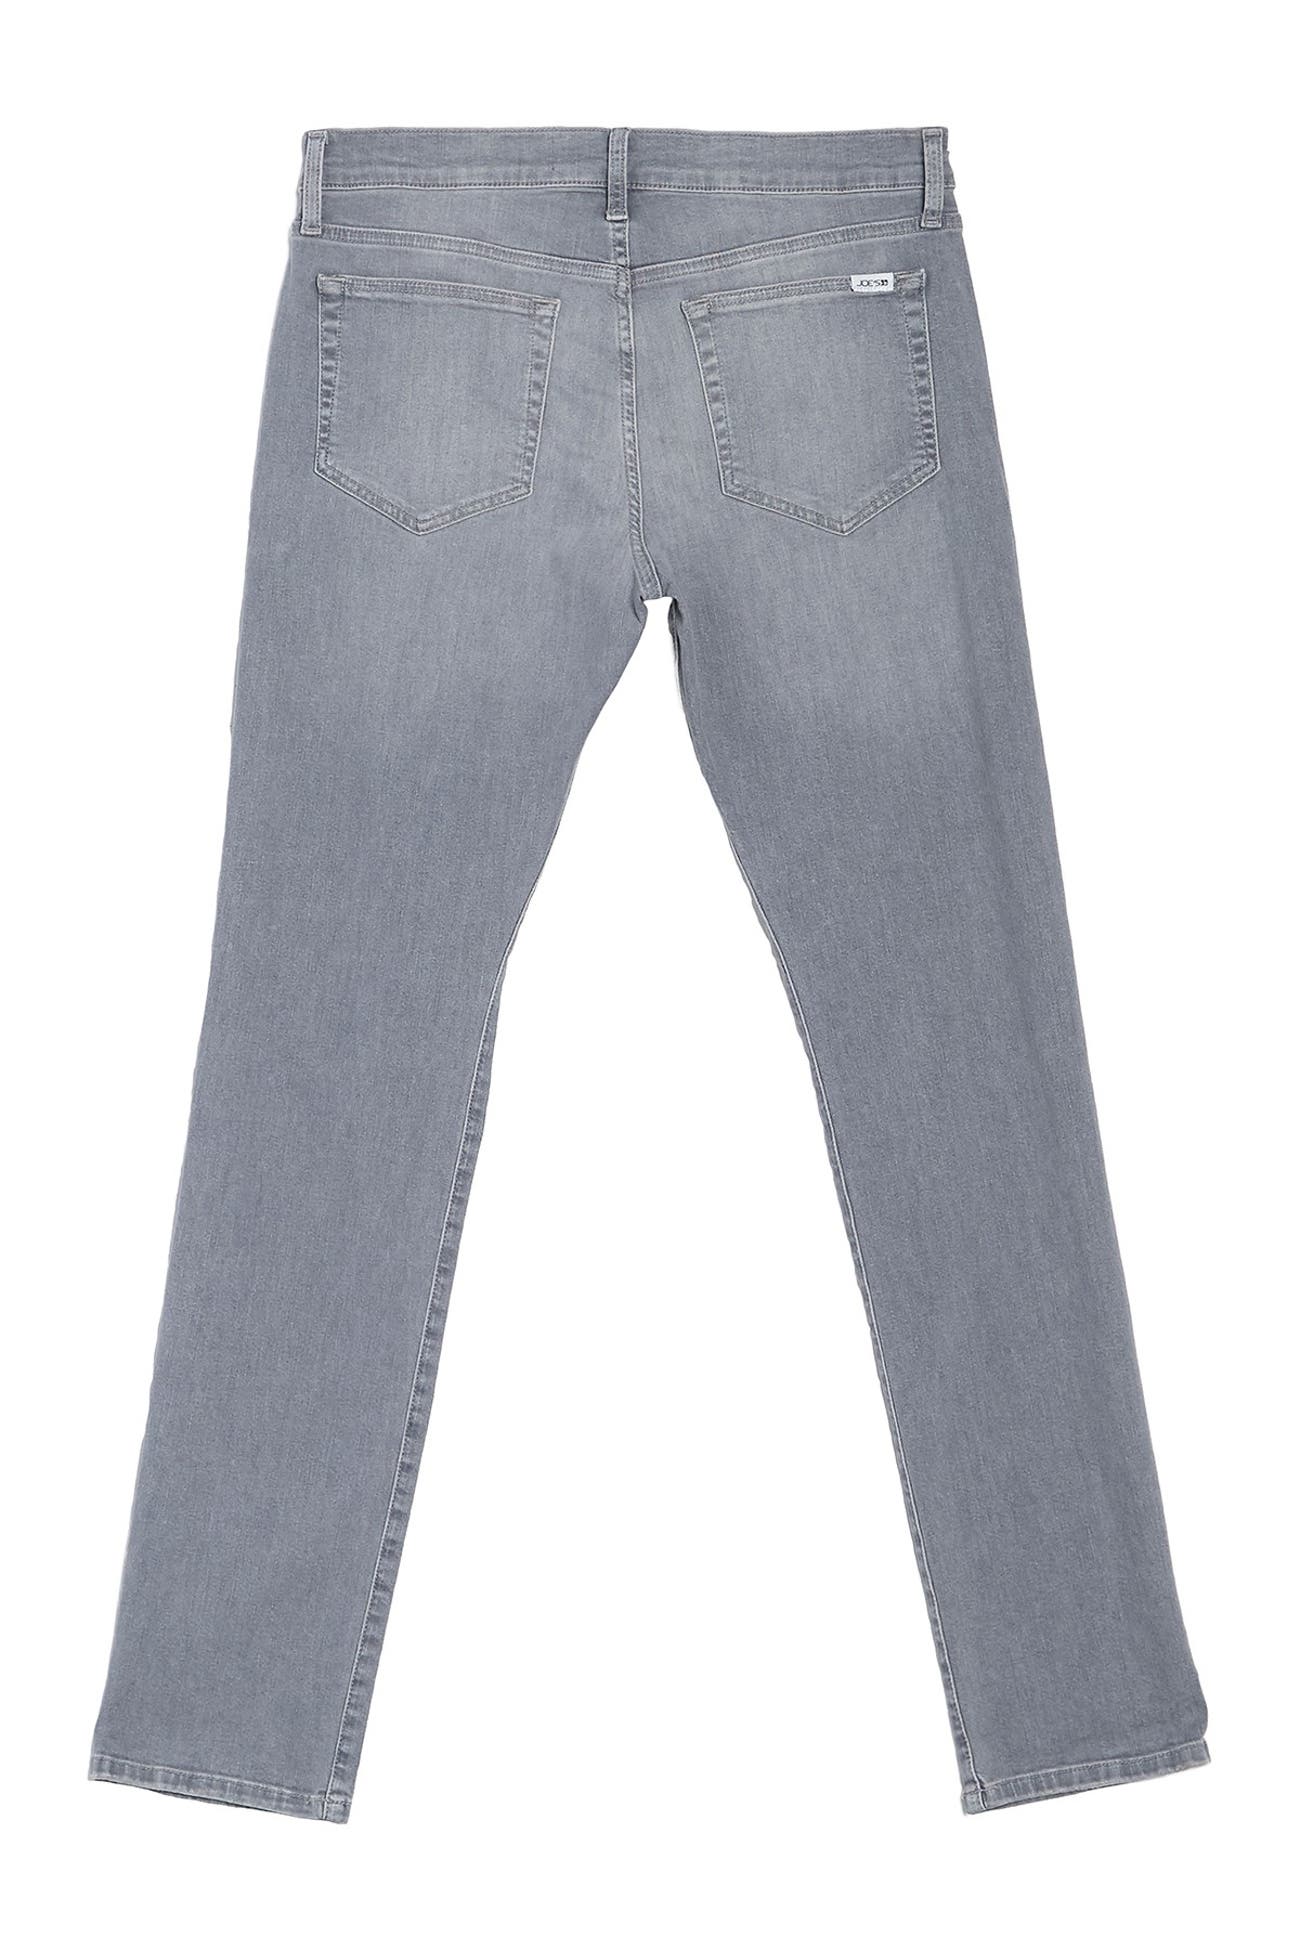 Joe's Jeans | Slim Fit Jeans | Nordstrom Rack